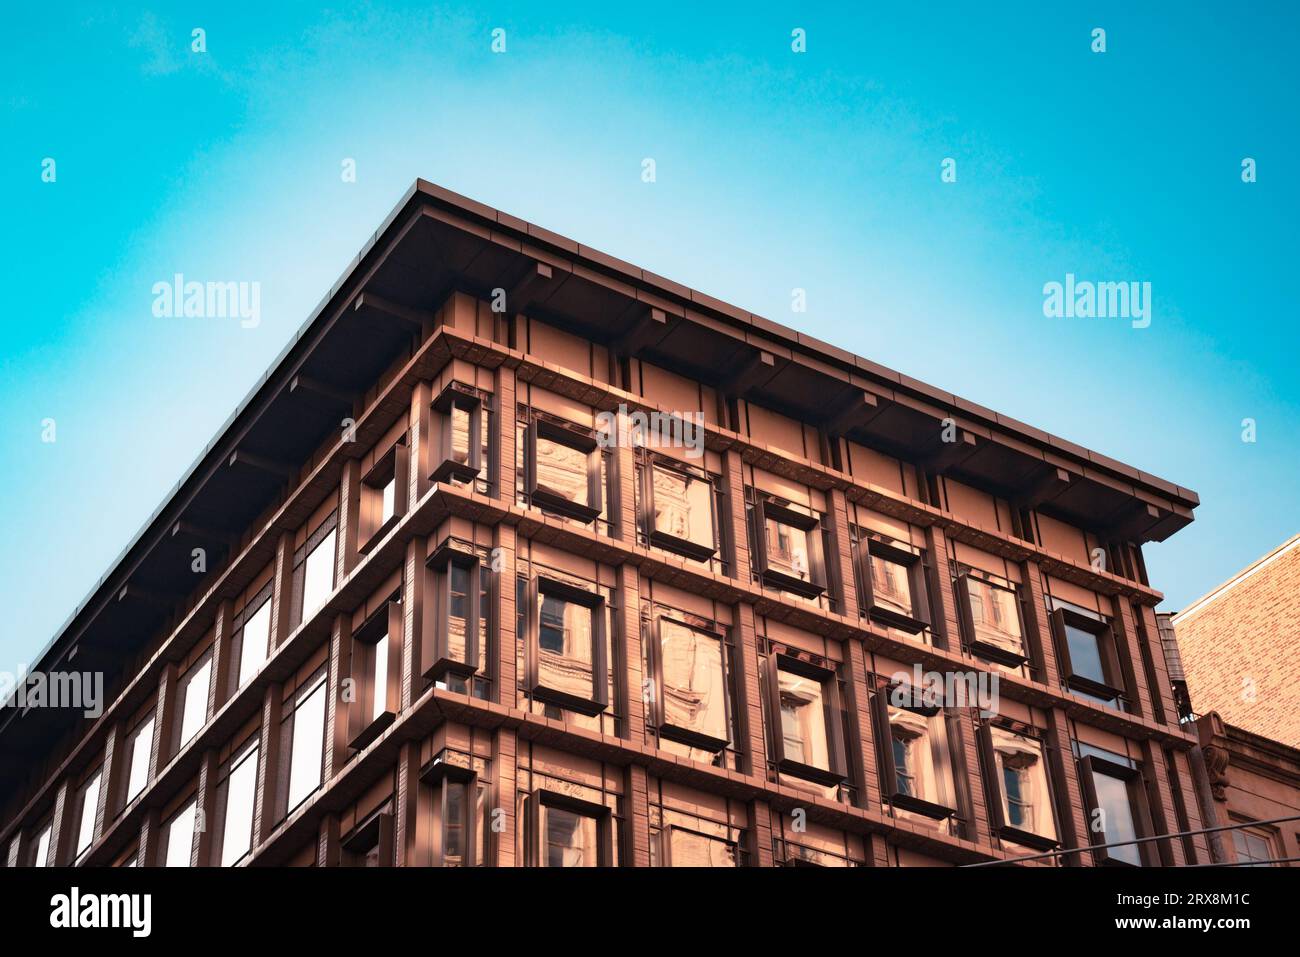 Dettagli ornamentali dell'edificio storico visti da New York City Foto Stock